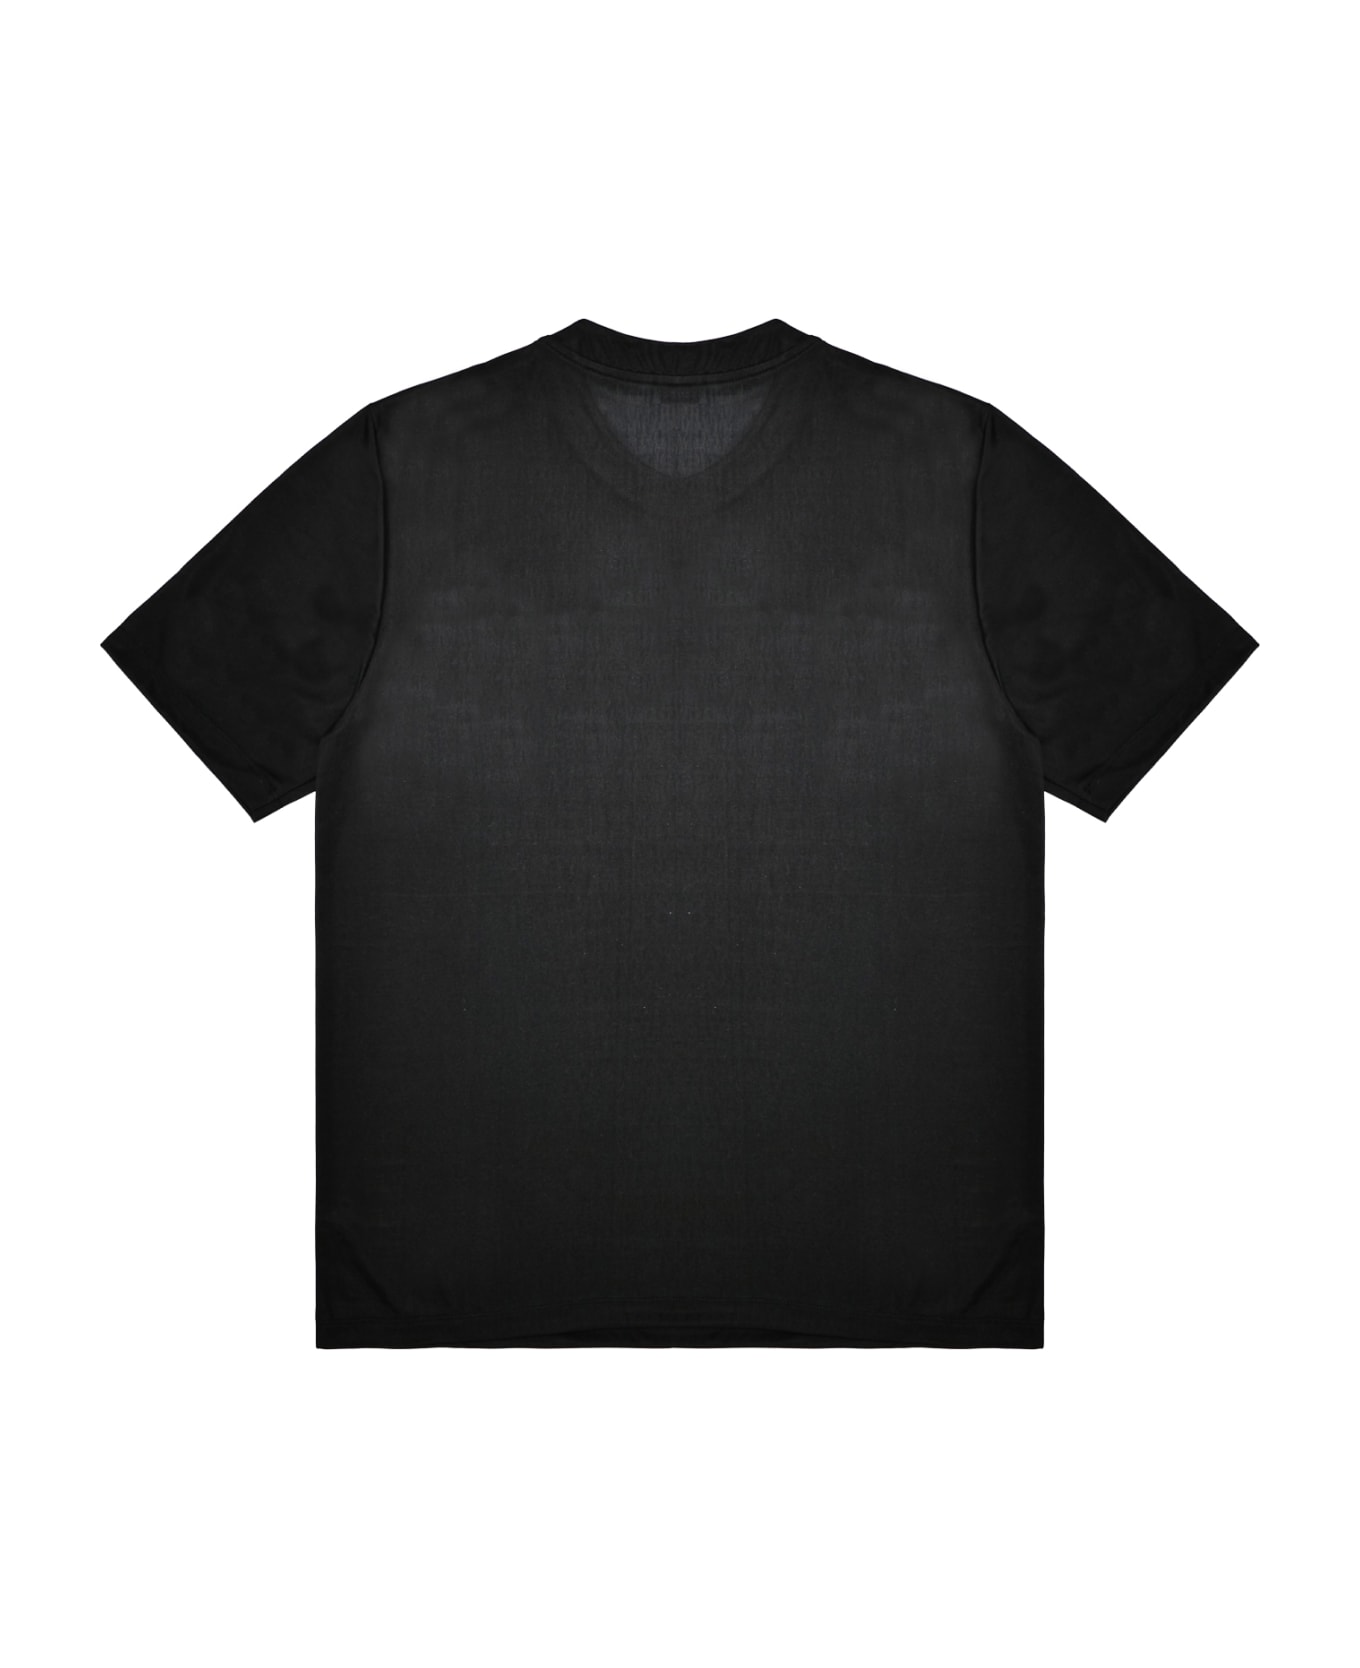 Paco Rabanne T-shirt - Black Tシャツ